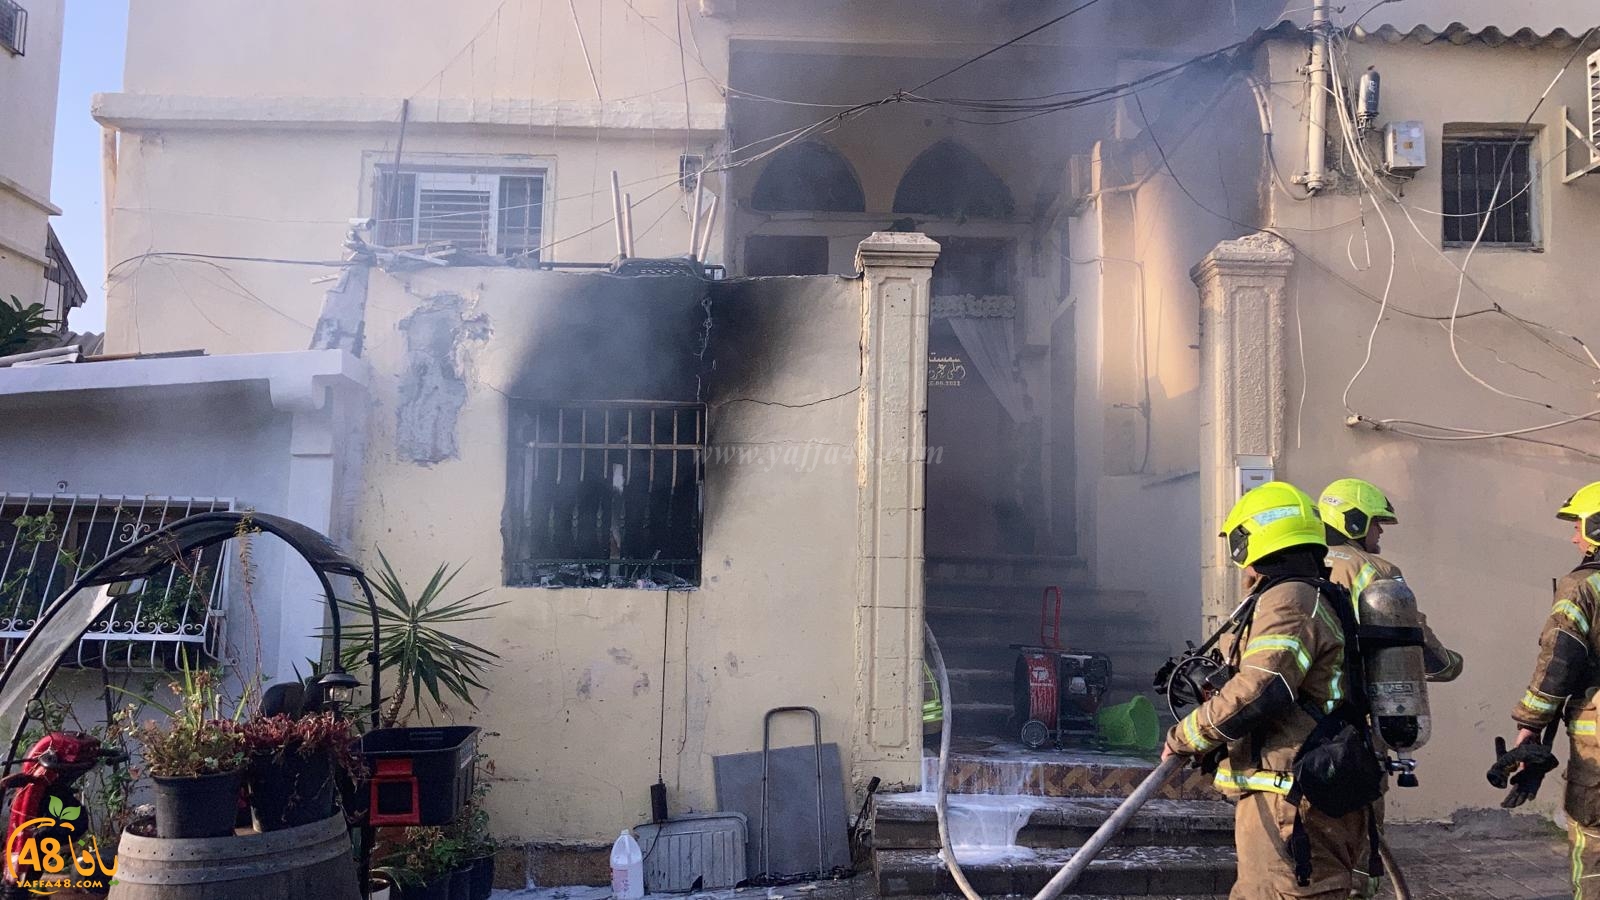   يافا: اصابة طفيفة لشخصين اثر حريق في أحد المنازل 